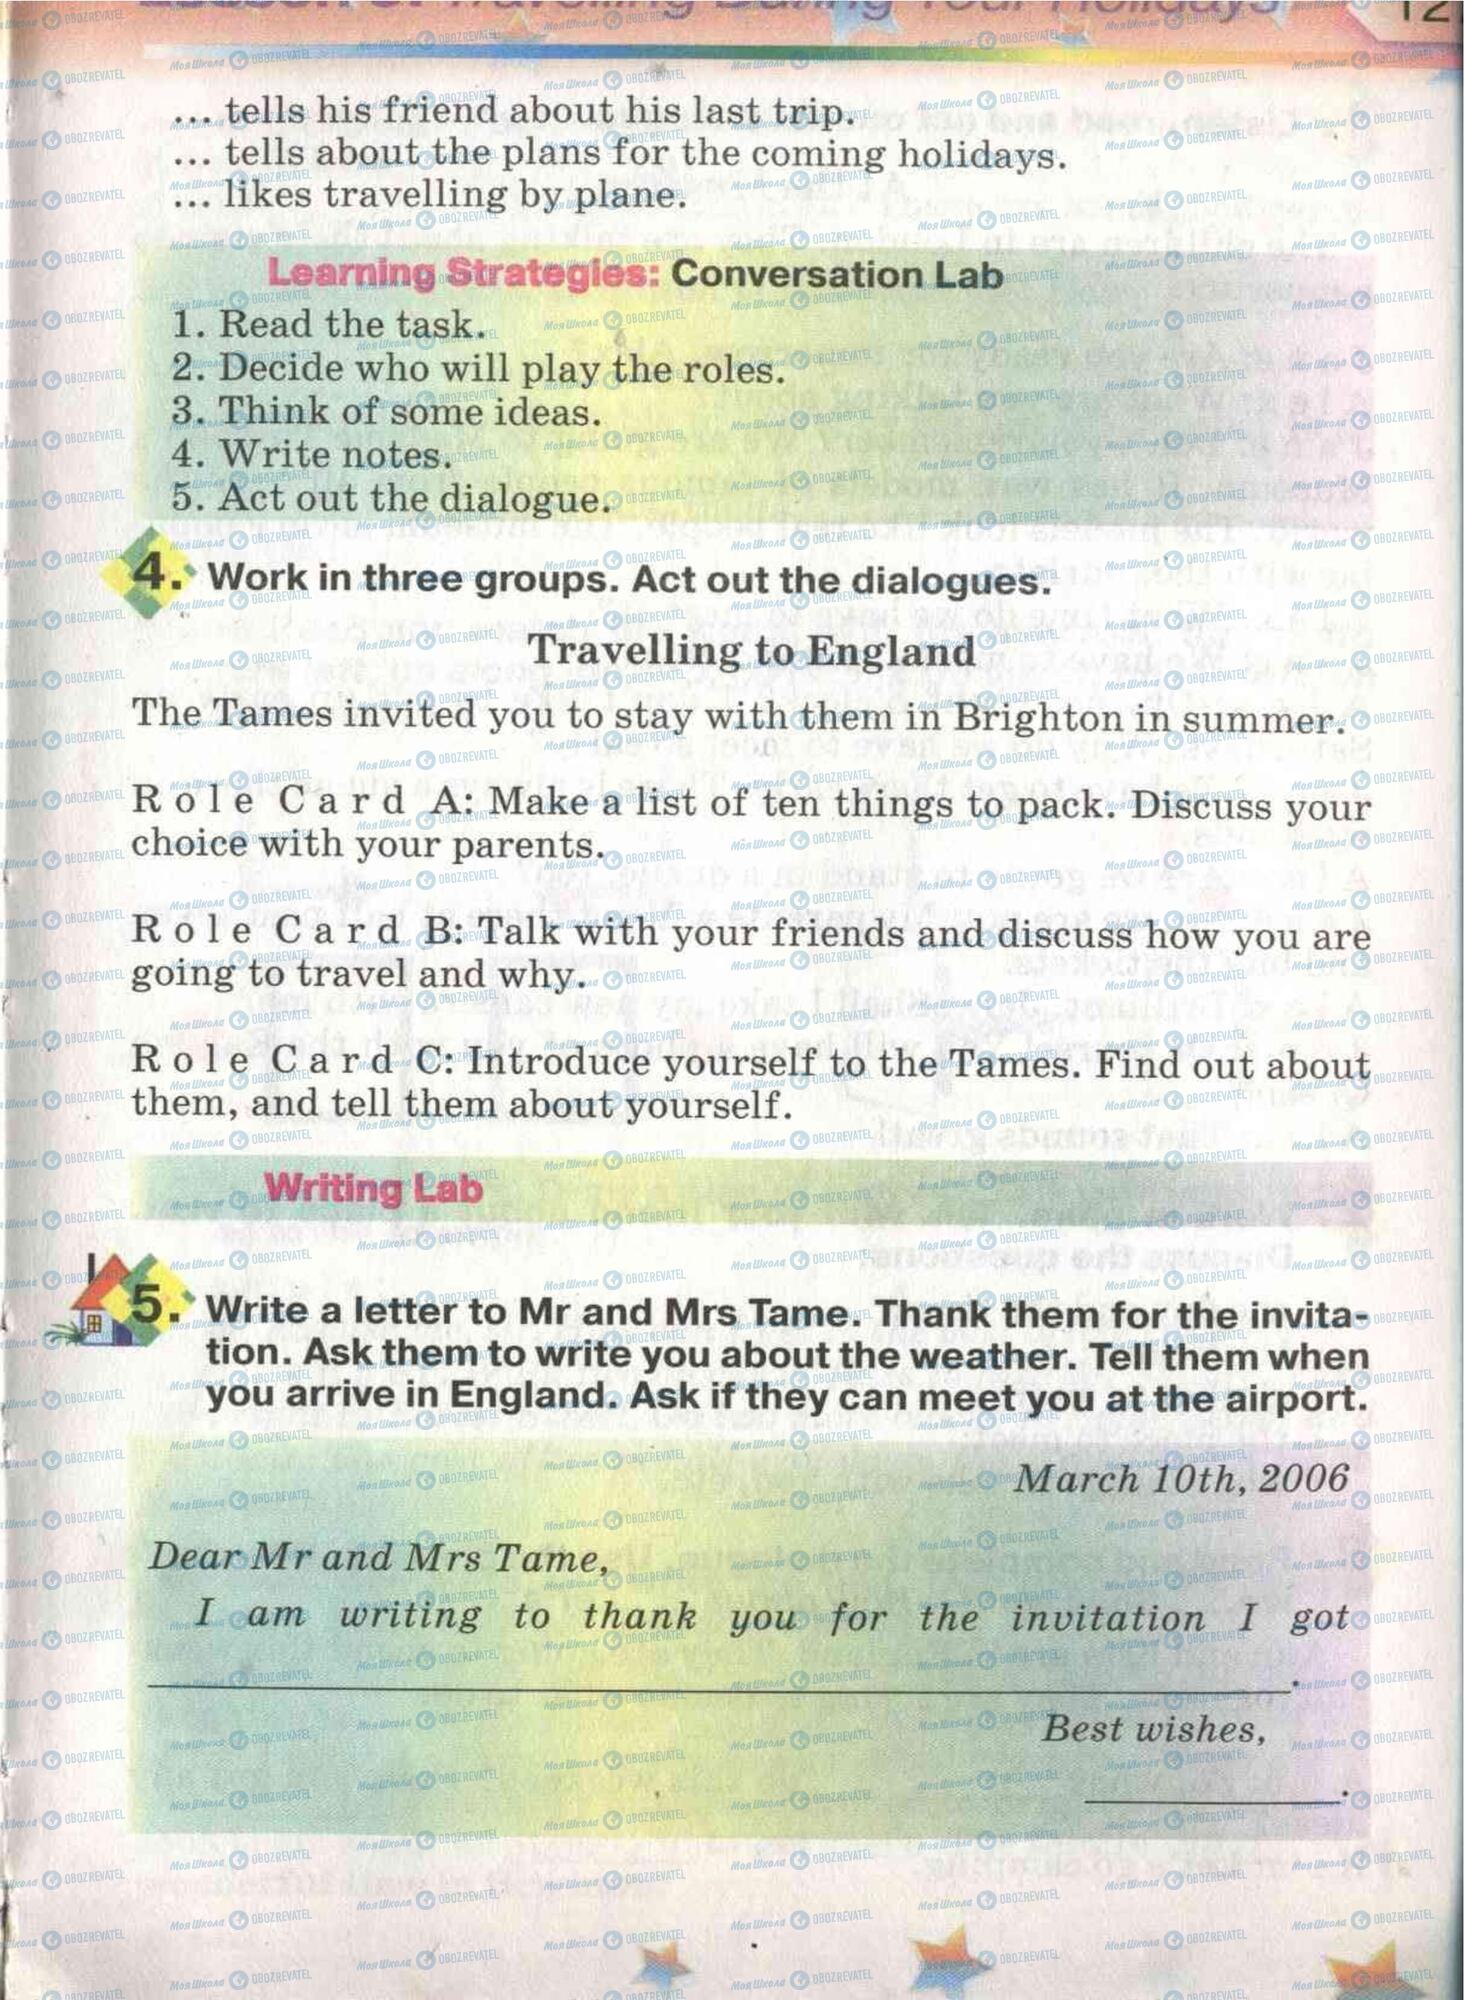 Підручники Англійська мова 5 клас сторінка 126